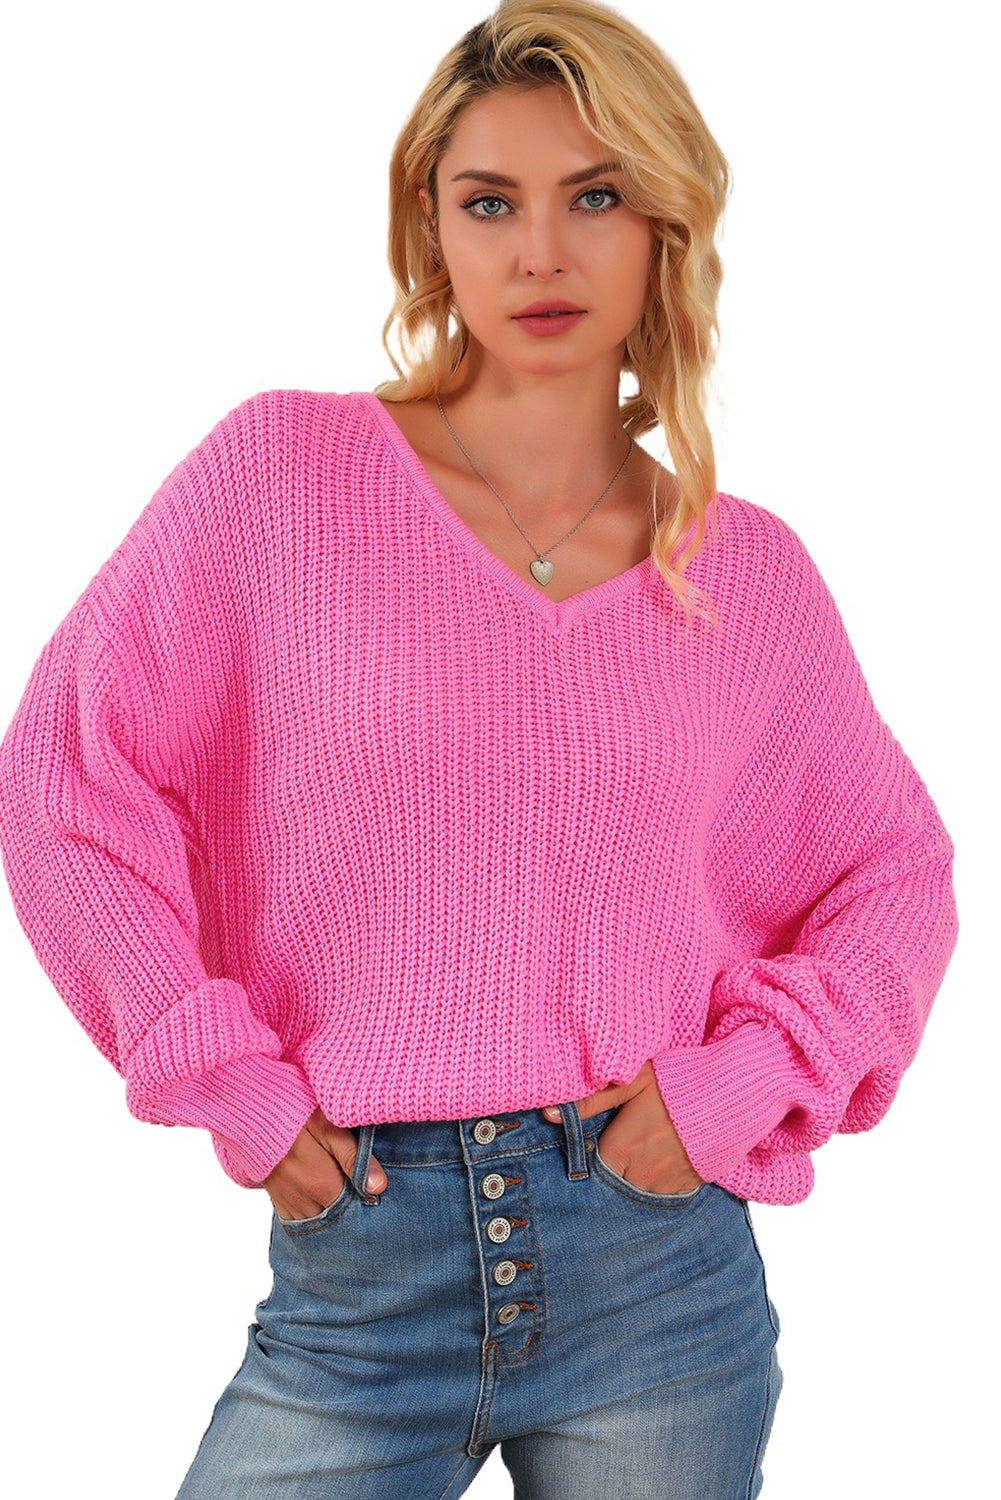 Rosafarbener Slouchy-Pullover mit V-Ausschnitt und überschnittener Schulter